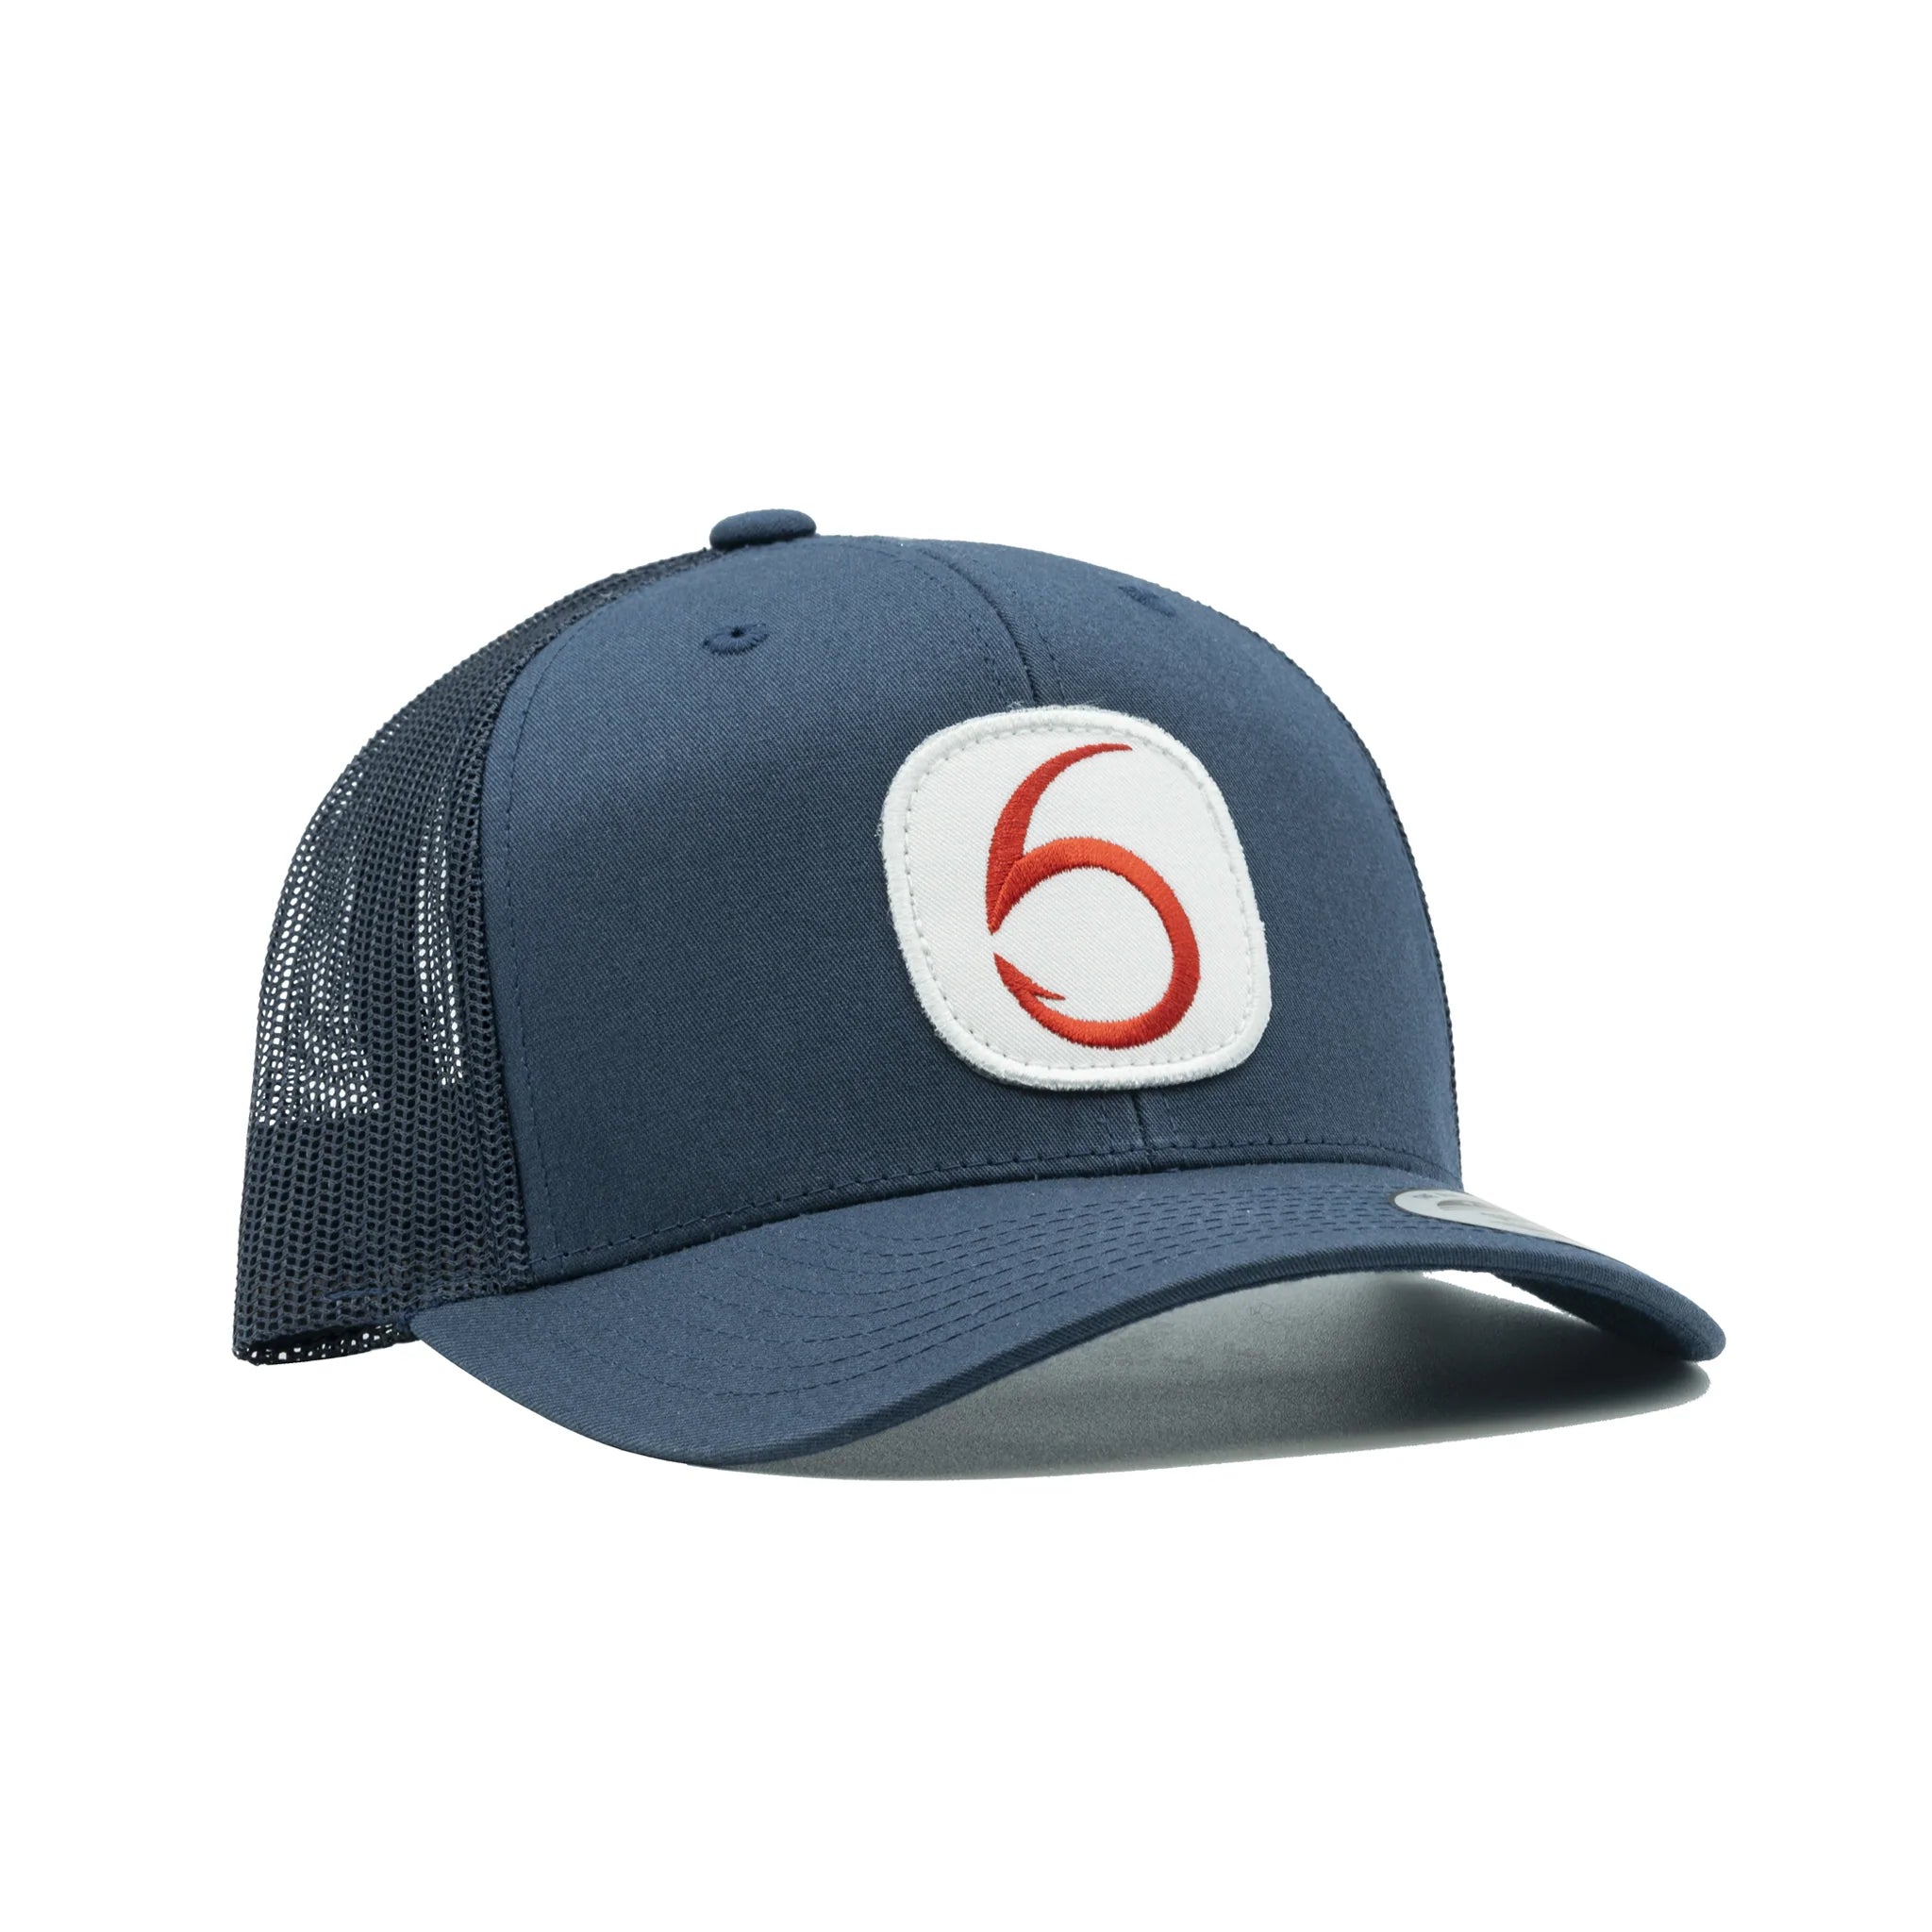 6TH SENSE HATS - 0